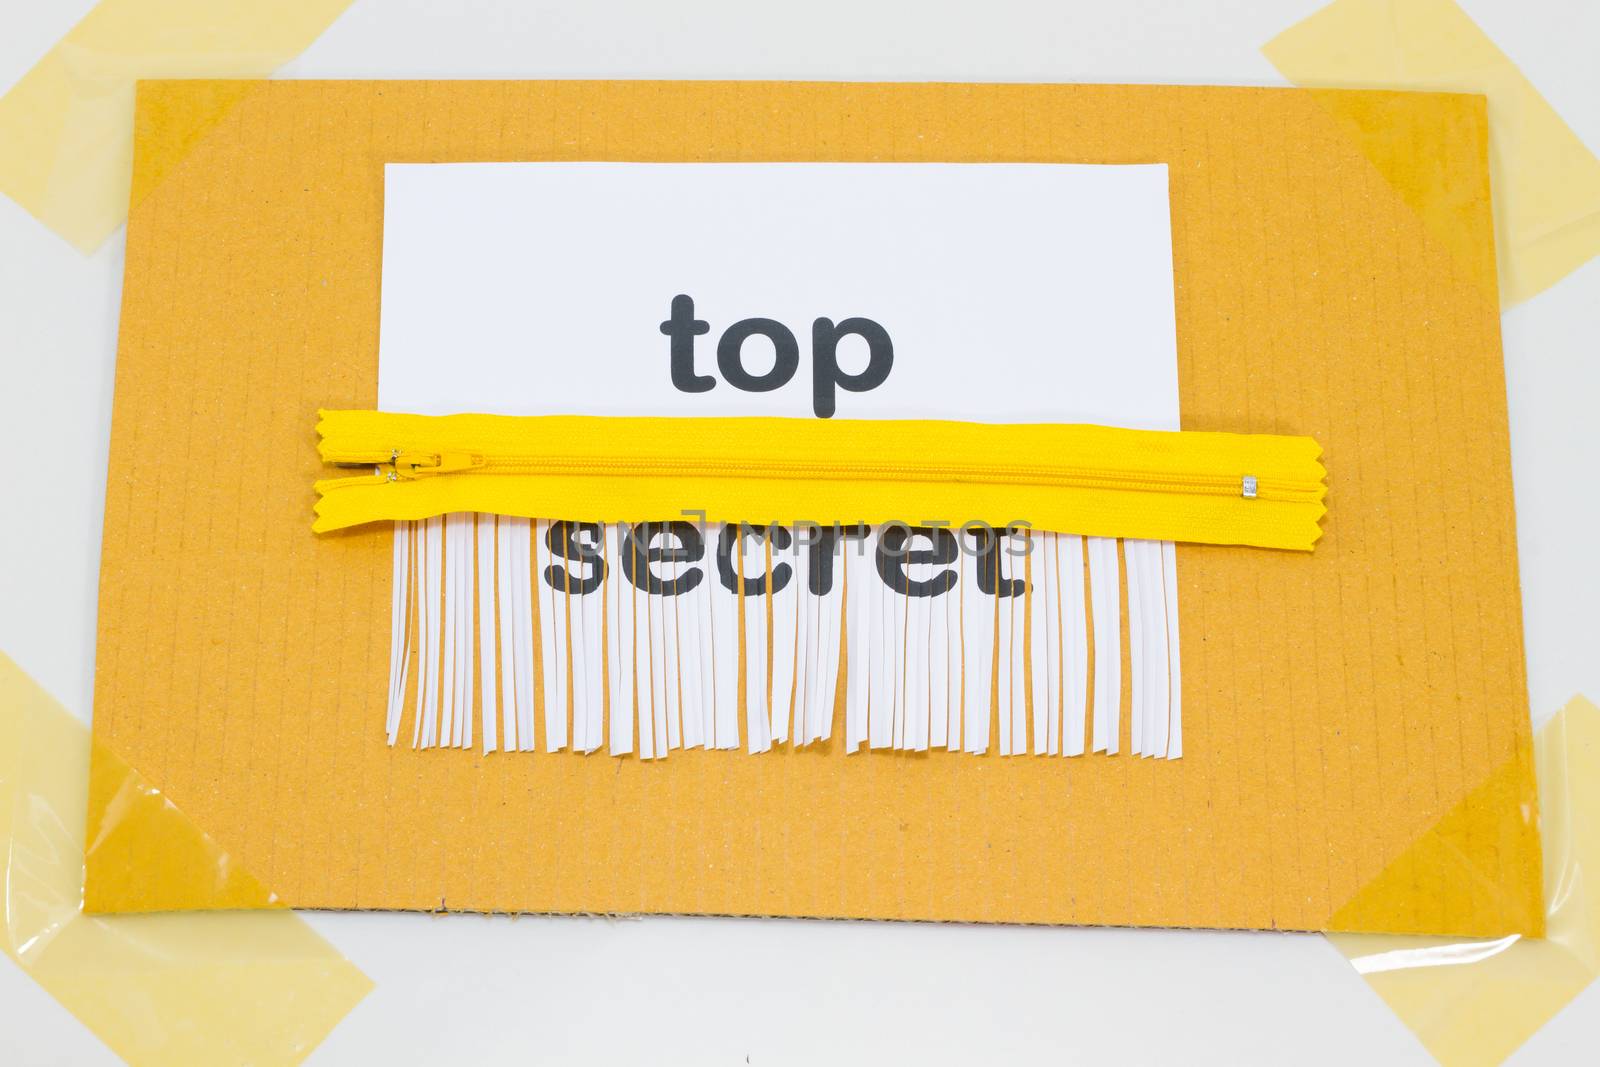 Top Secret, destroying sheet of paper with yellow zipper as a shredder.